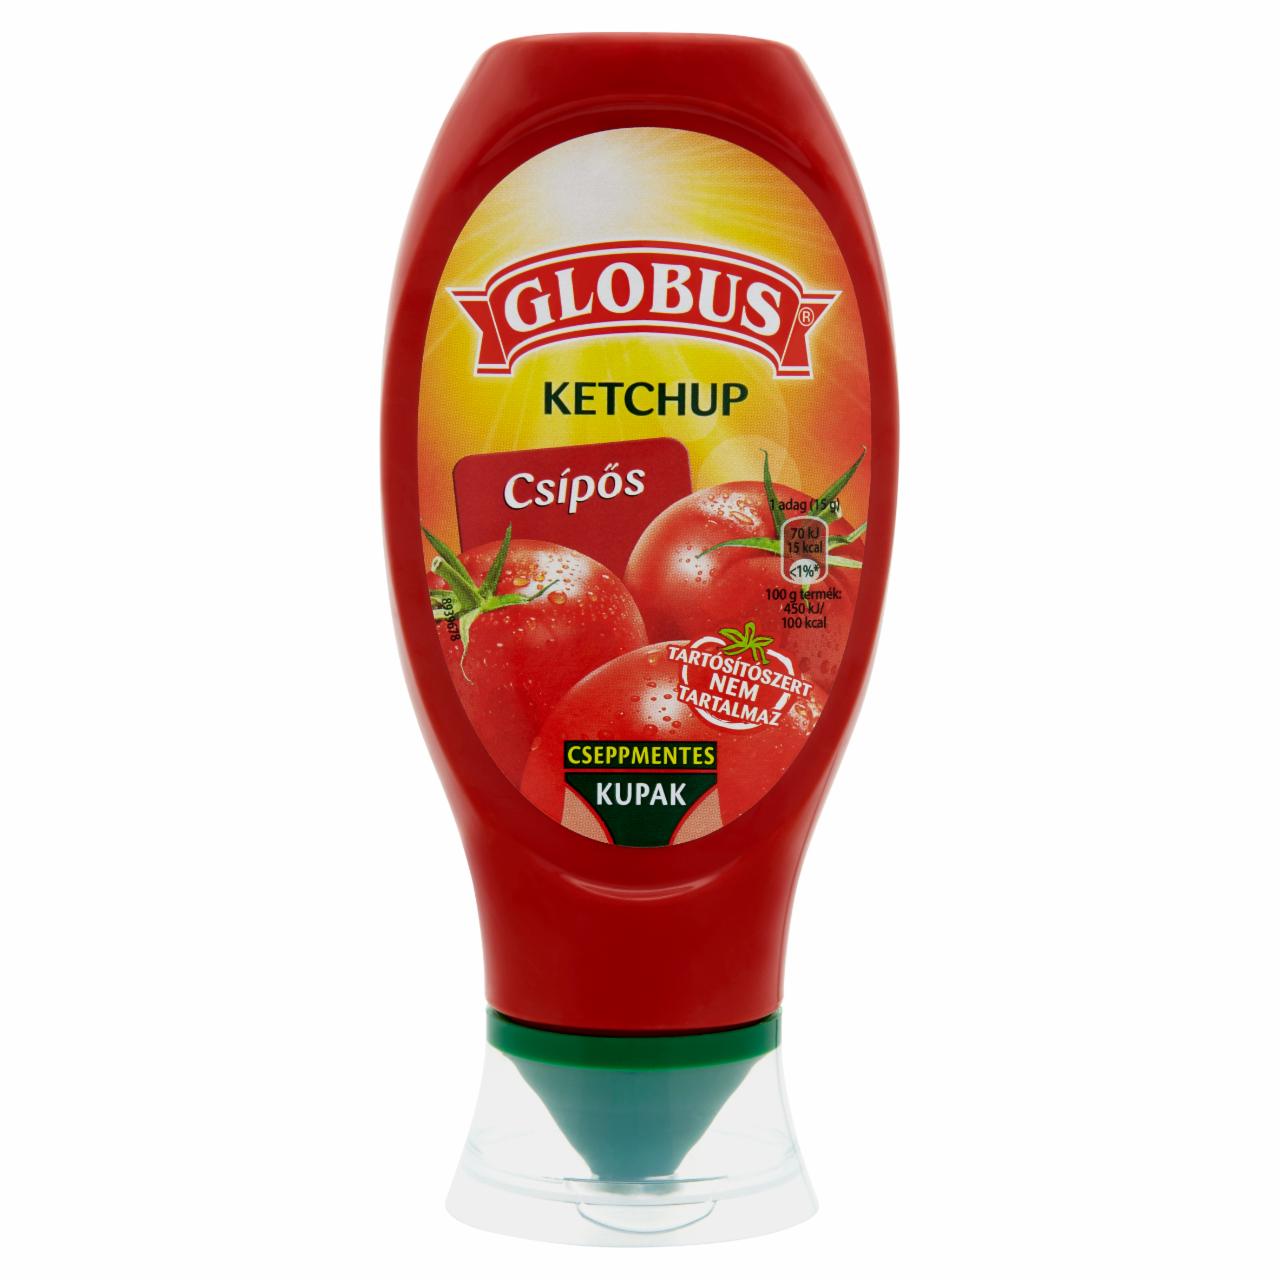 Képek - Globus csípős ketchup 450 g